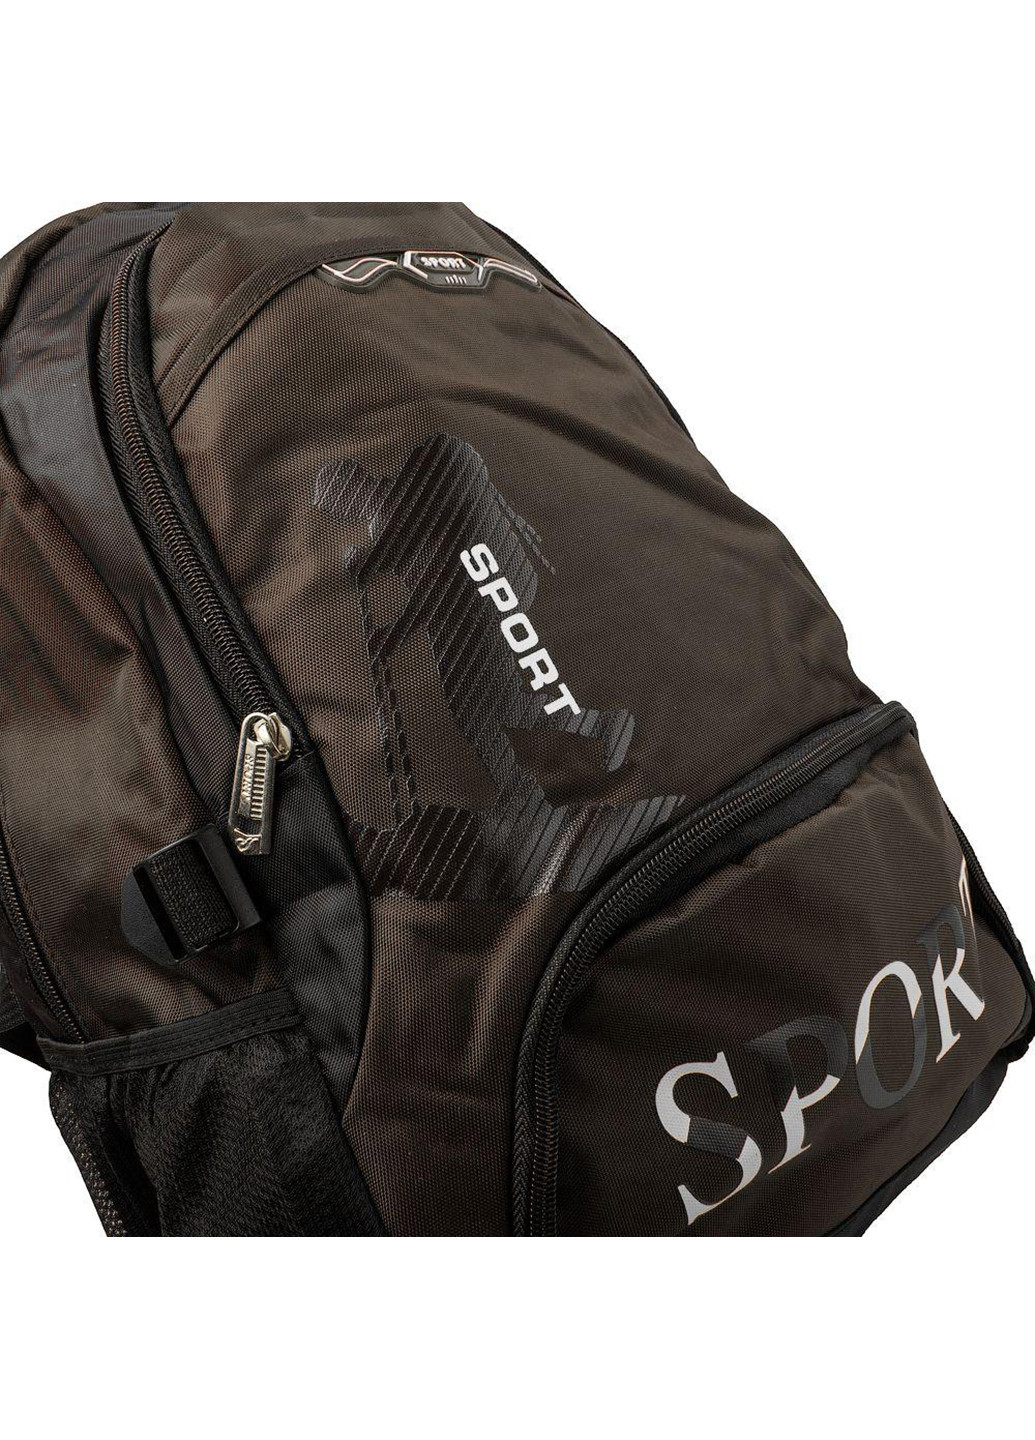 Мужской спортивный рюкзак 31х46х16 см Valiria Fashion (252131843)